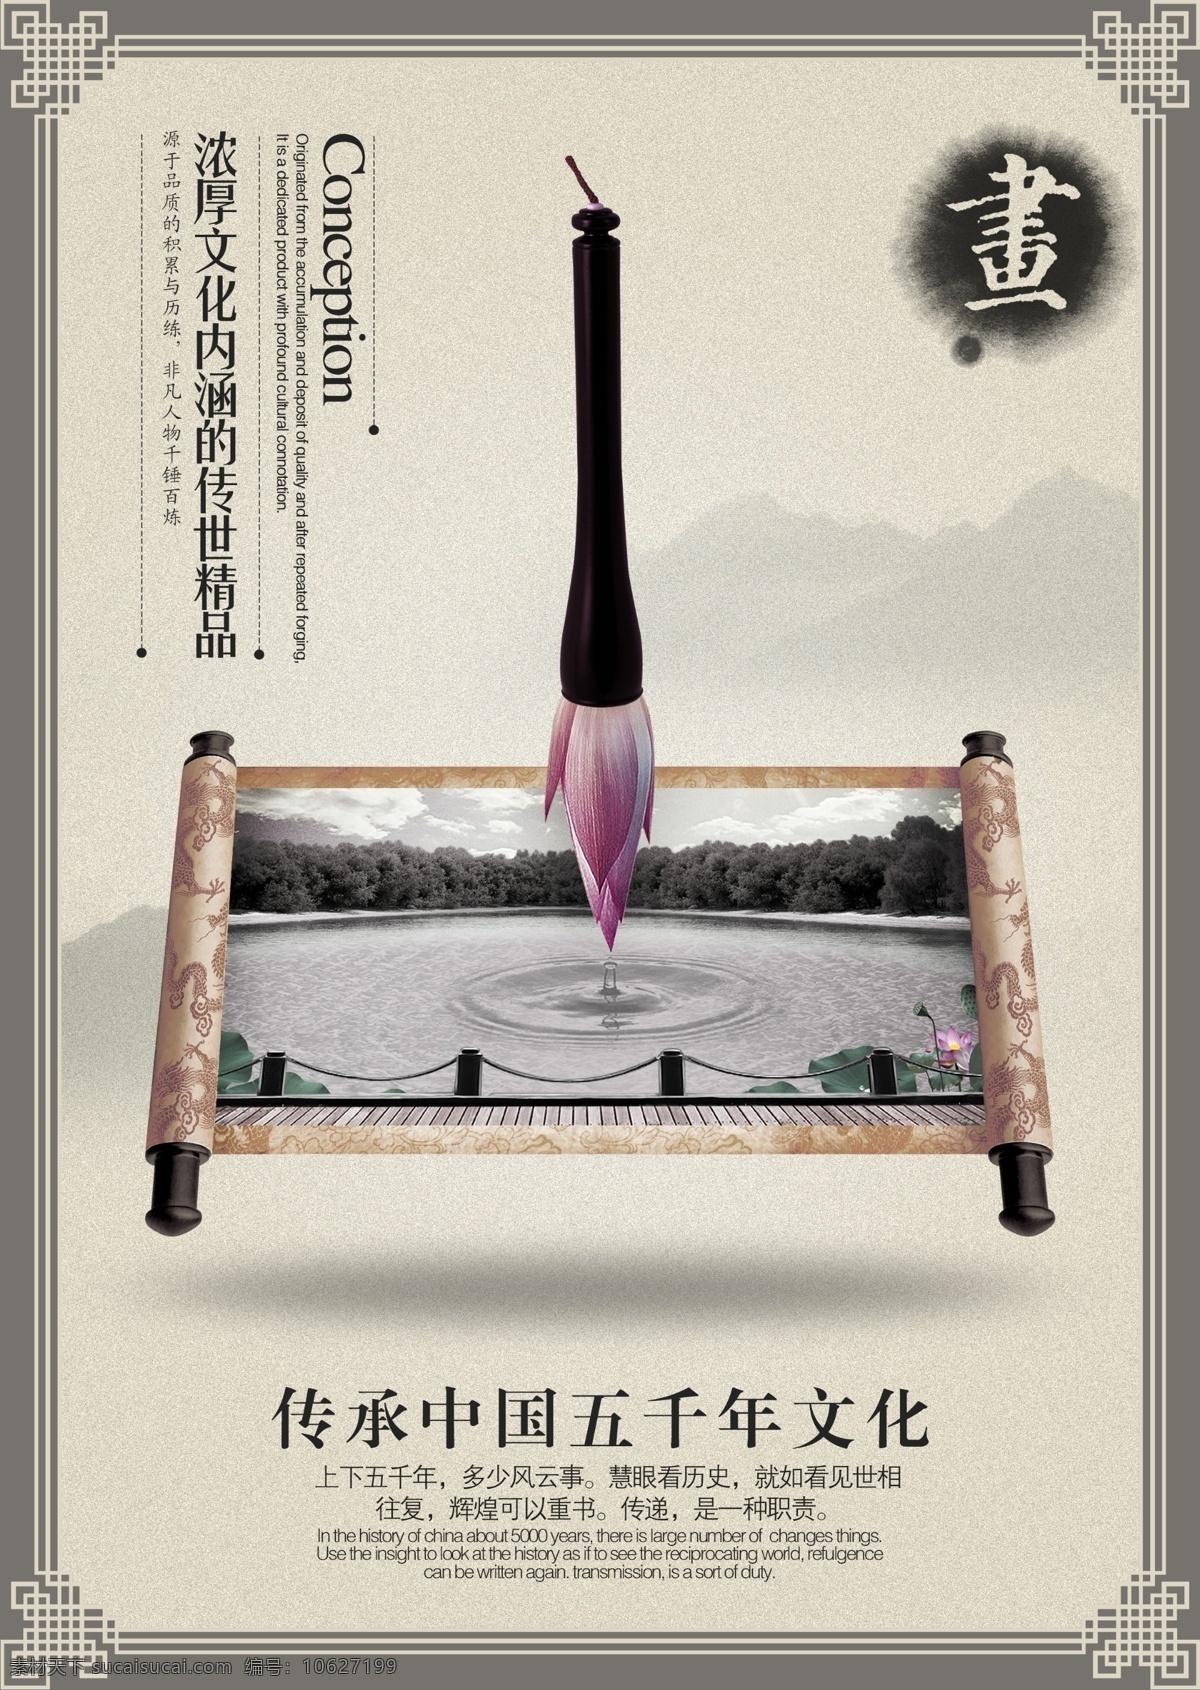 琴棋书画 系列 展示 画 精品 棋 琴 书 中国风 五千年文化 文化内涵 原创设计 原创海报